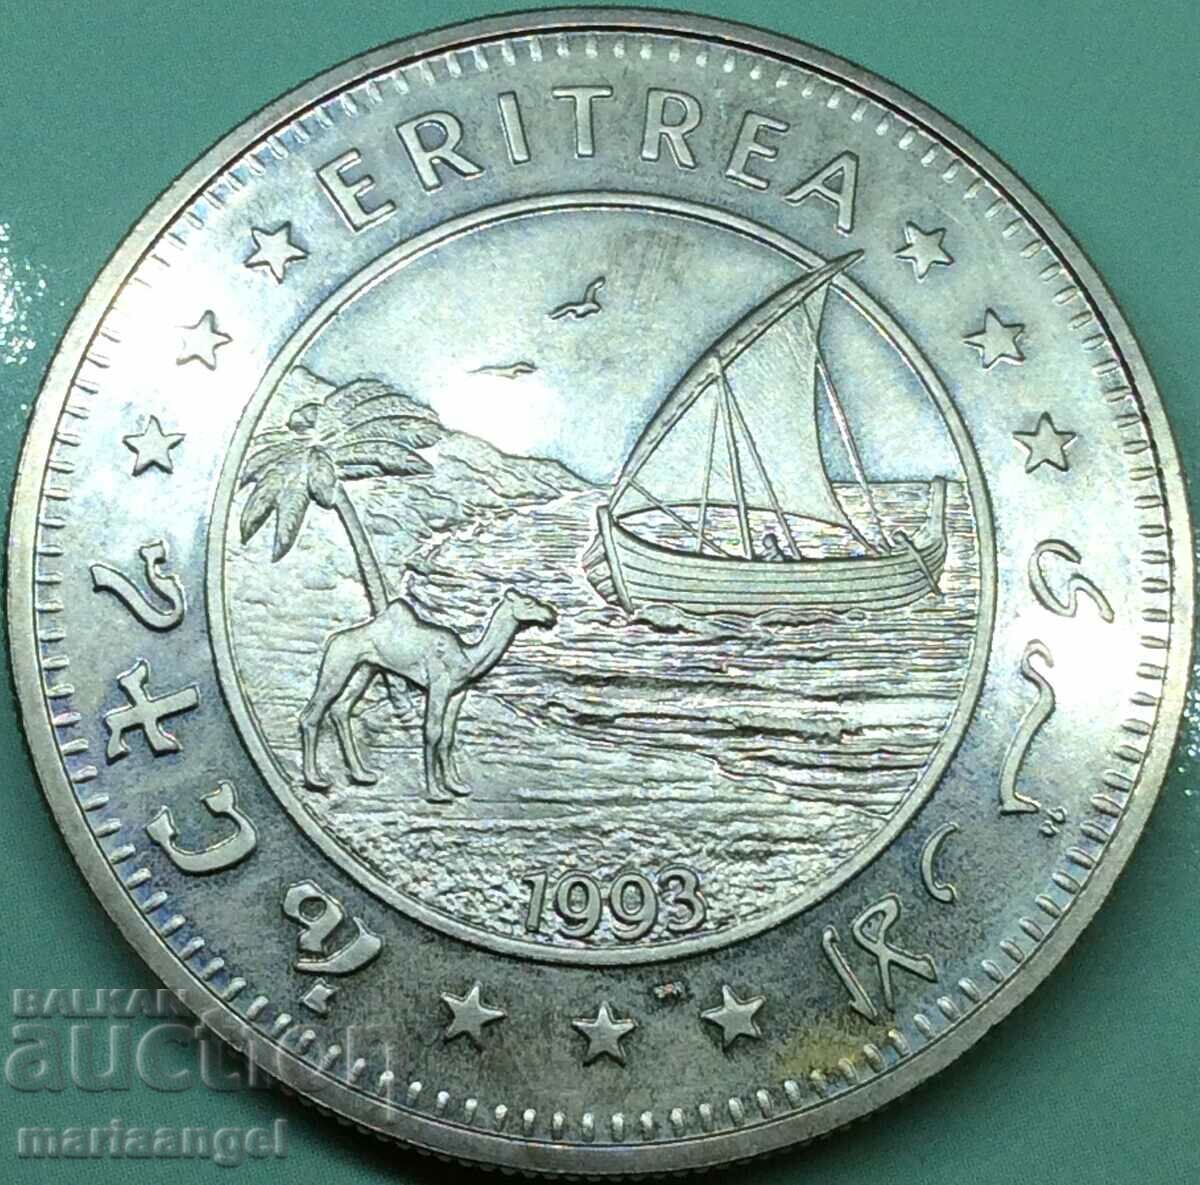 Eritrea 1993 1 dollar